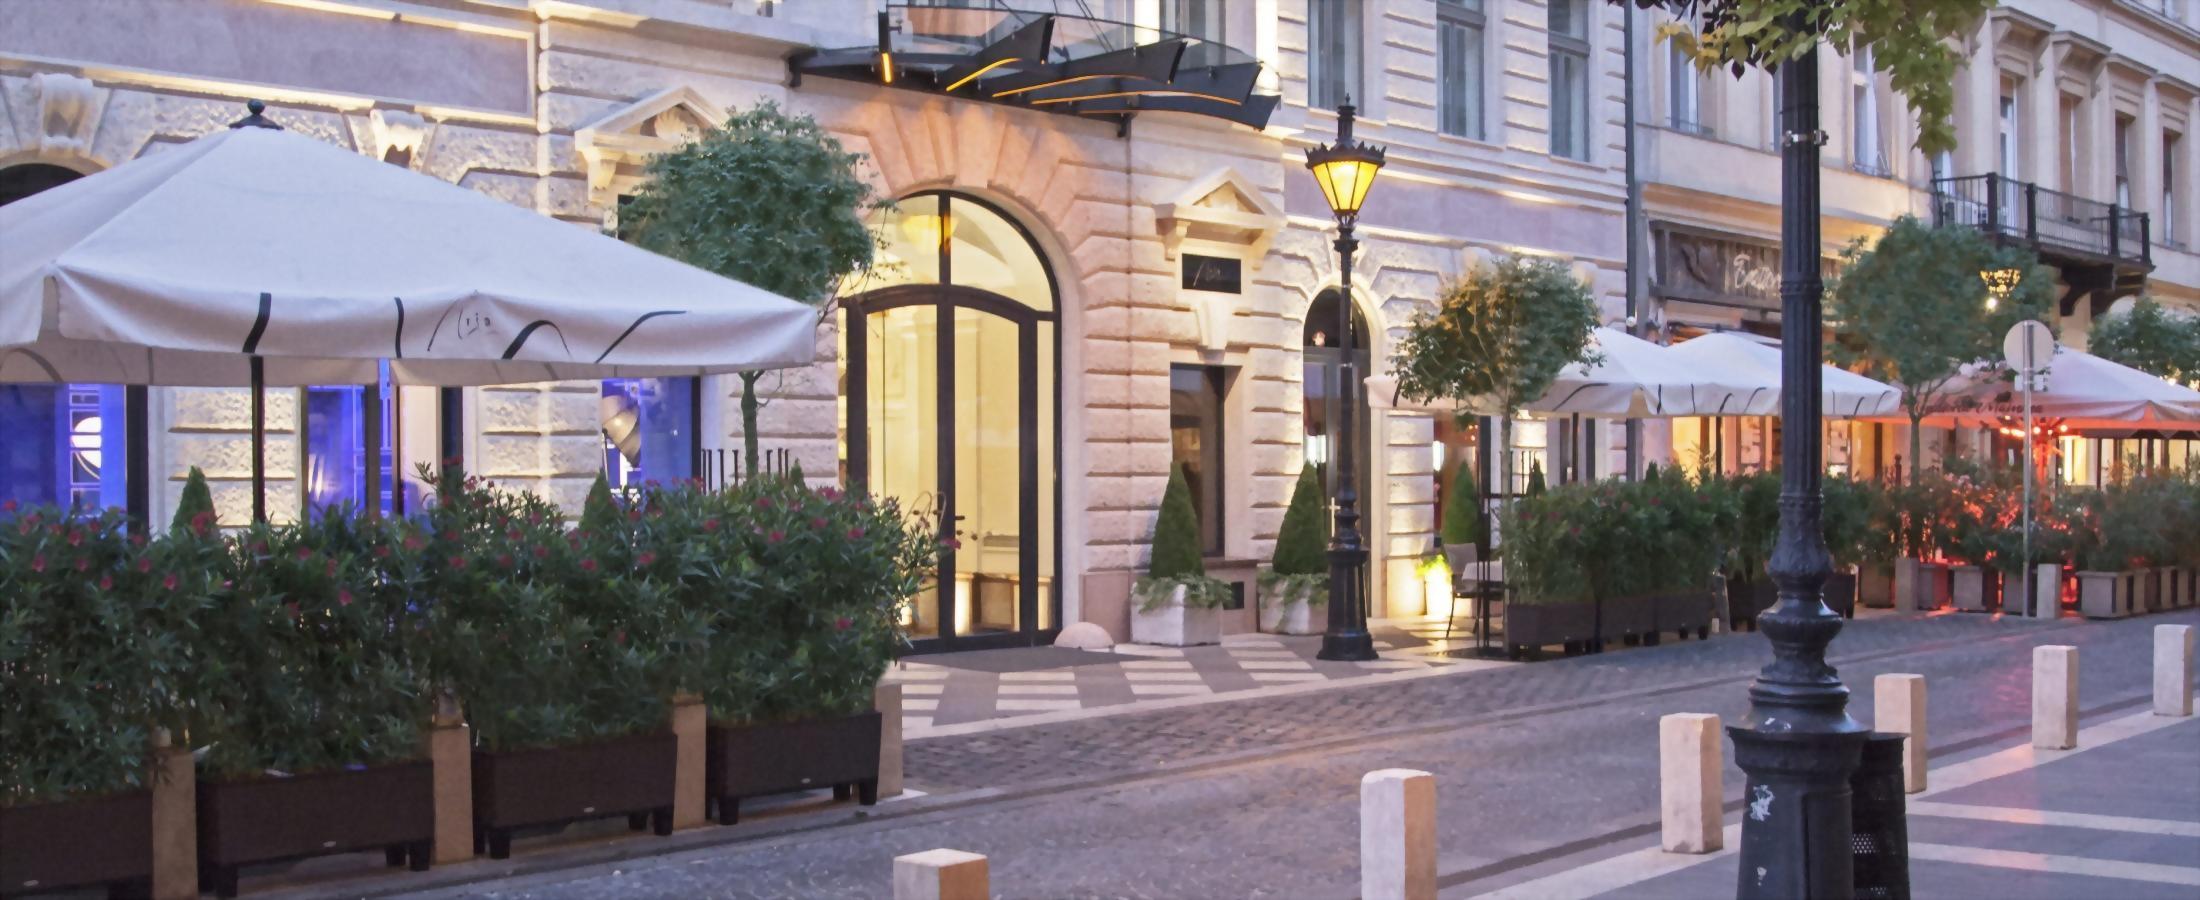 Az Aria Hotel Budapest szálloda a pesti oldal festői kis utcájában fekszik, környékén számos sétálóutca, kávézó, étterem és terasz található.